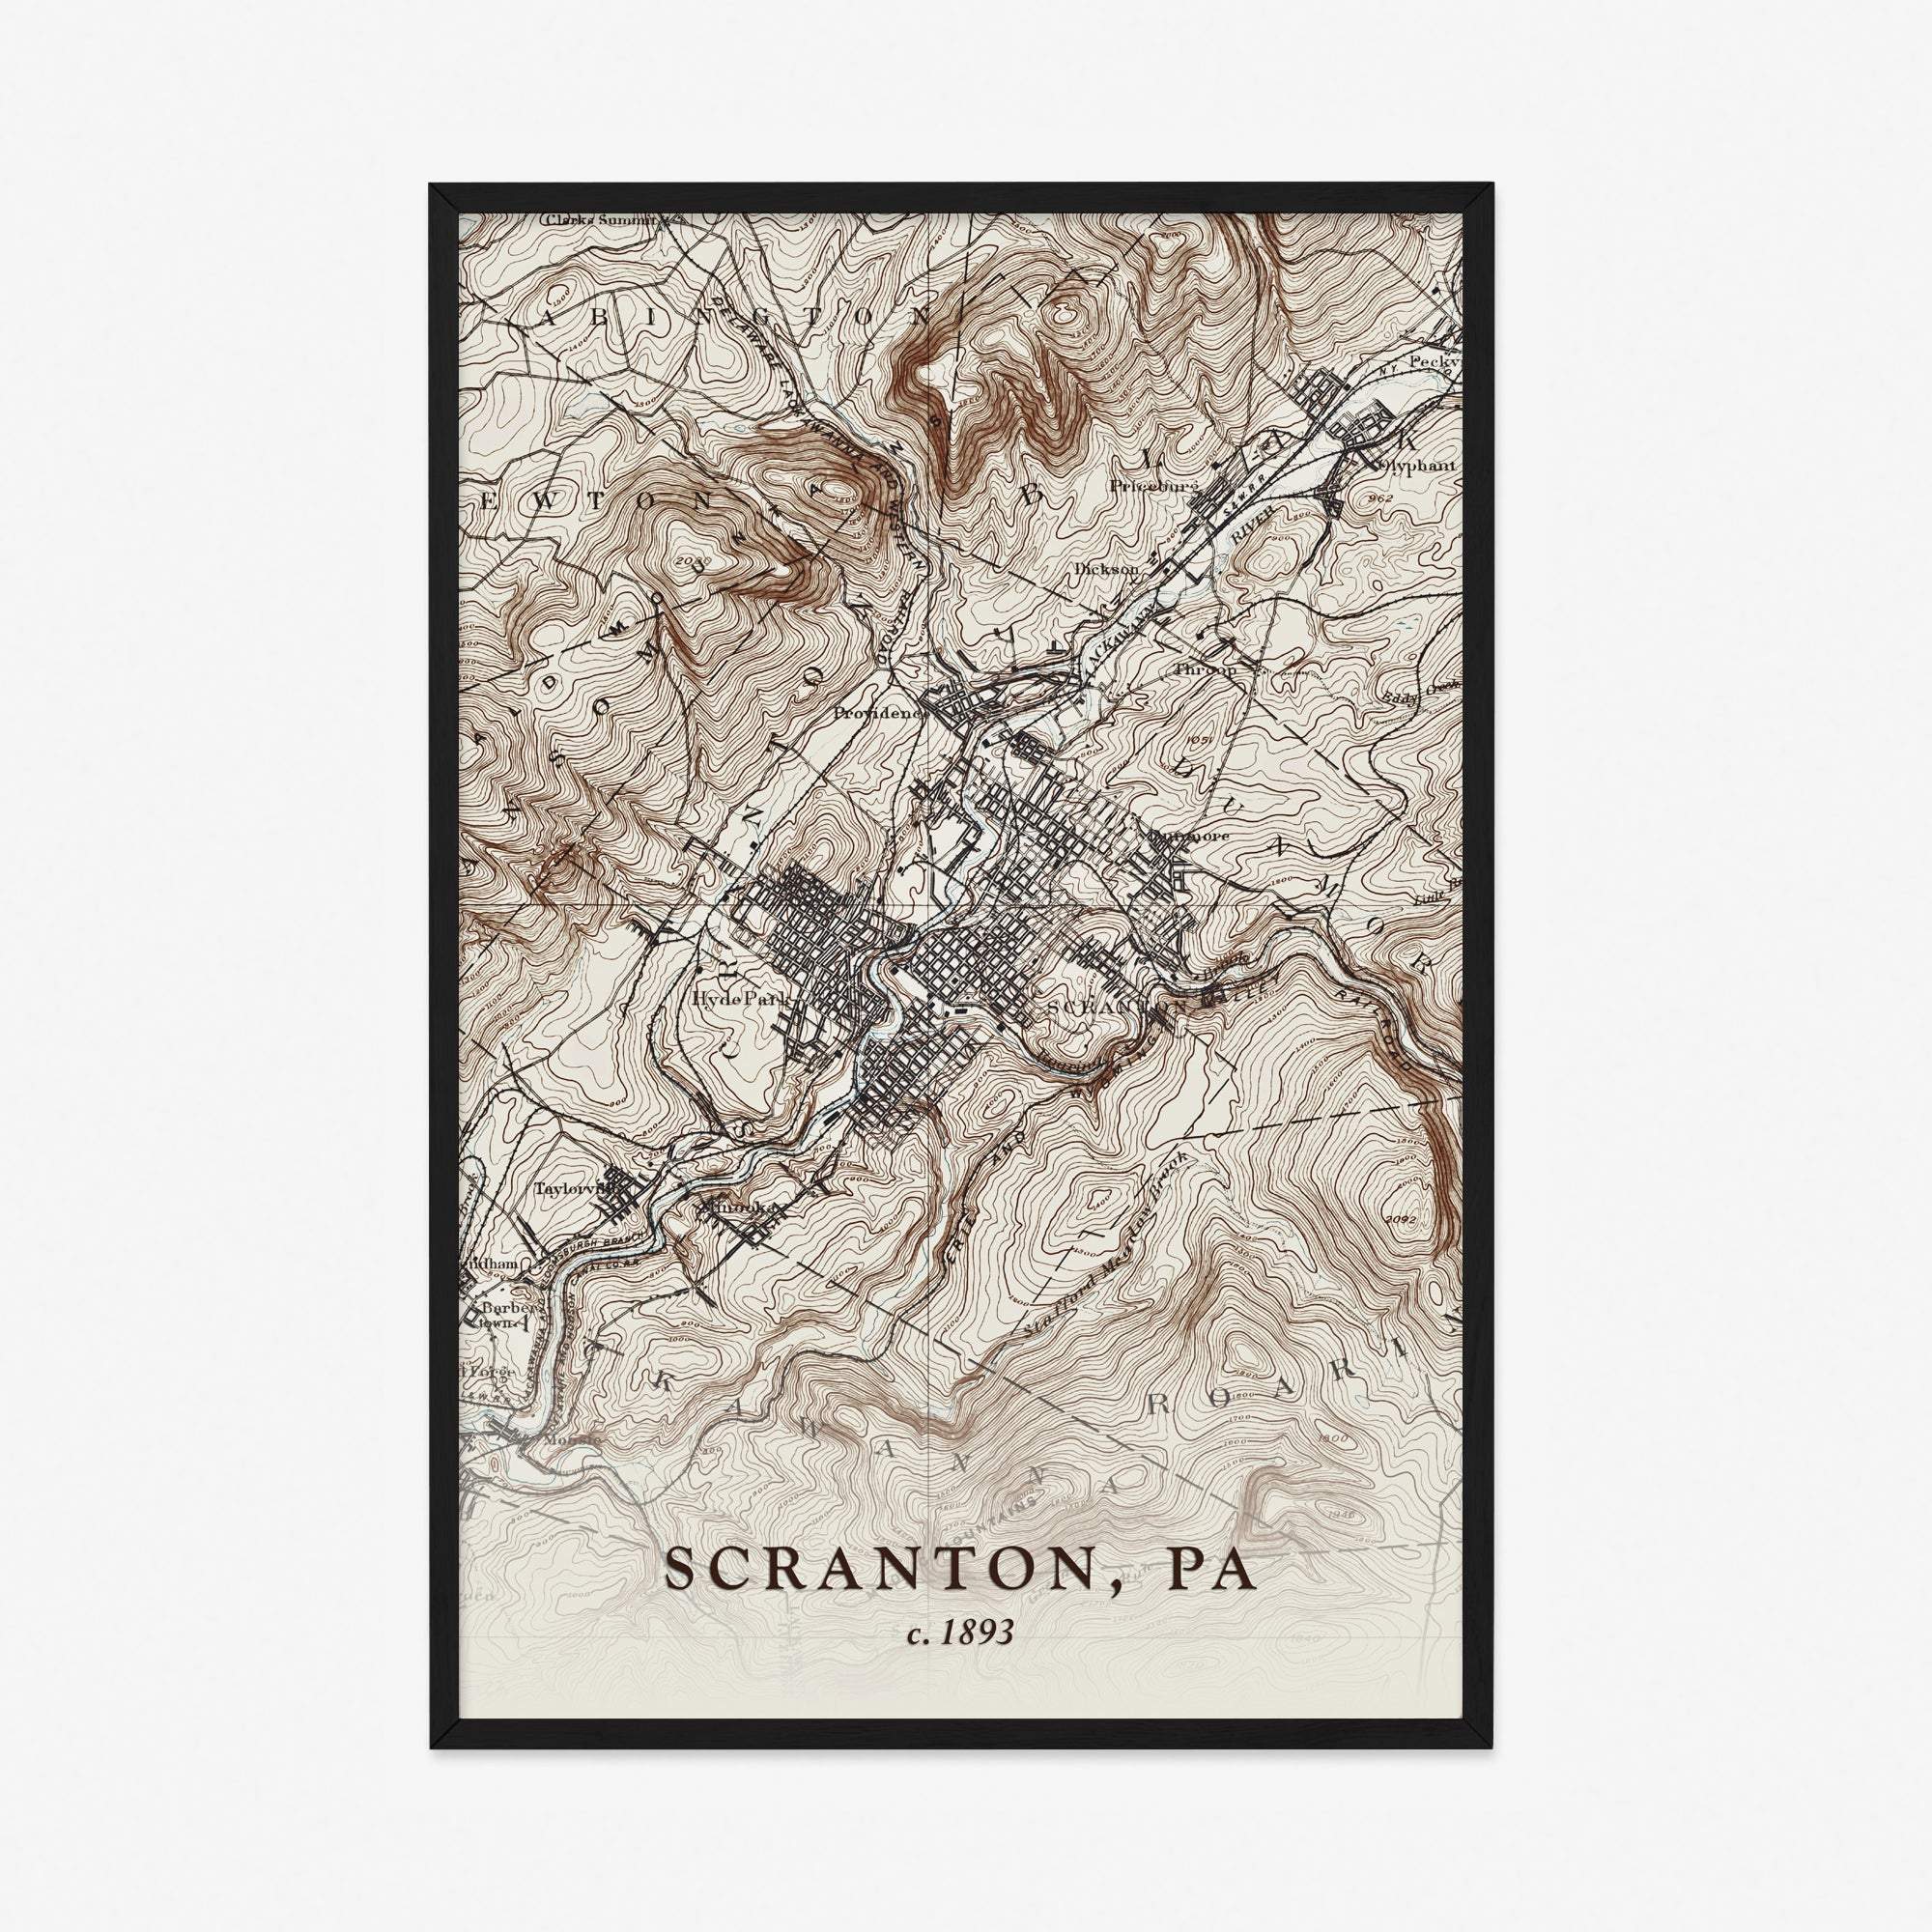 Scranton, PA - 1893 Topographic Map